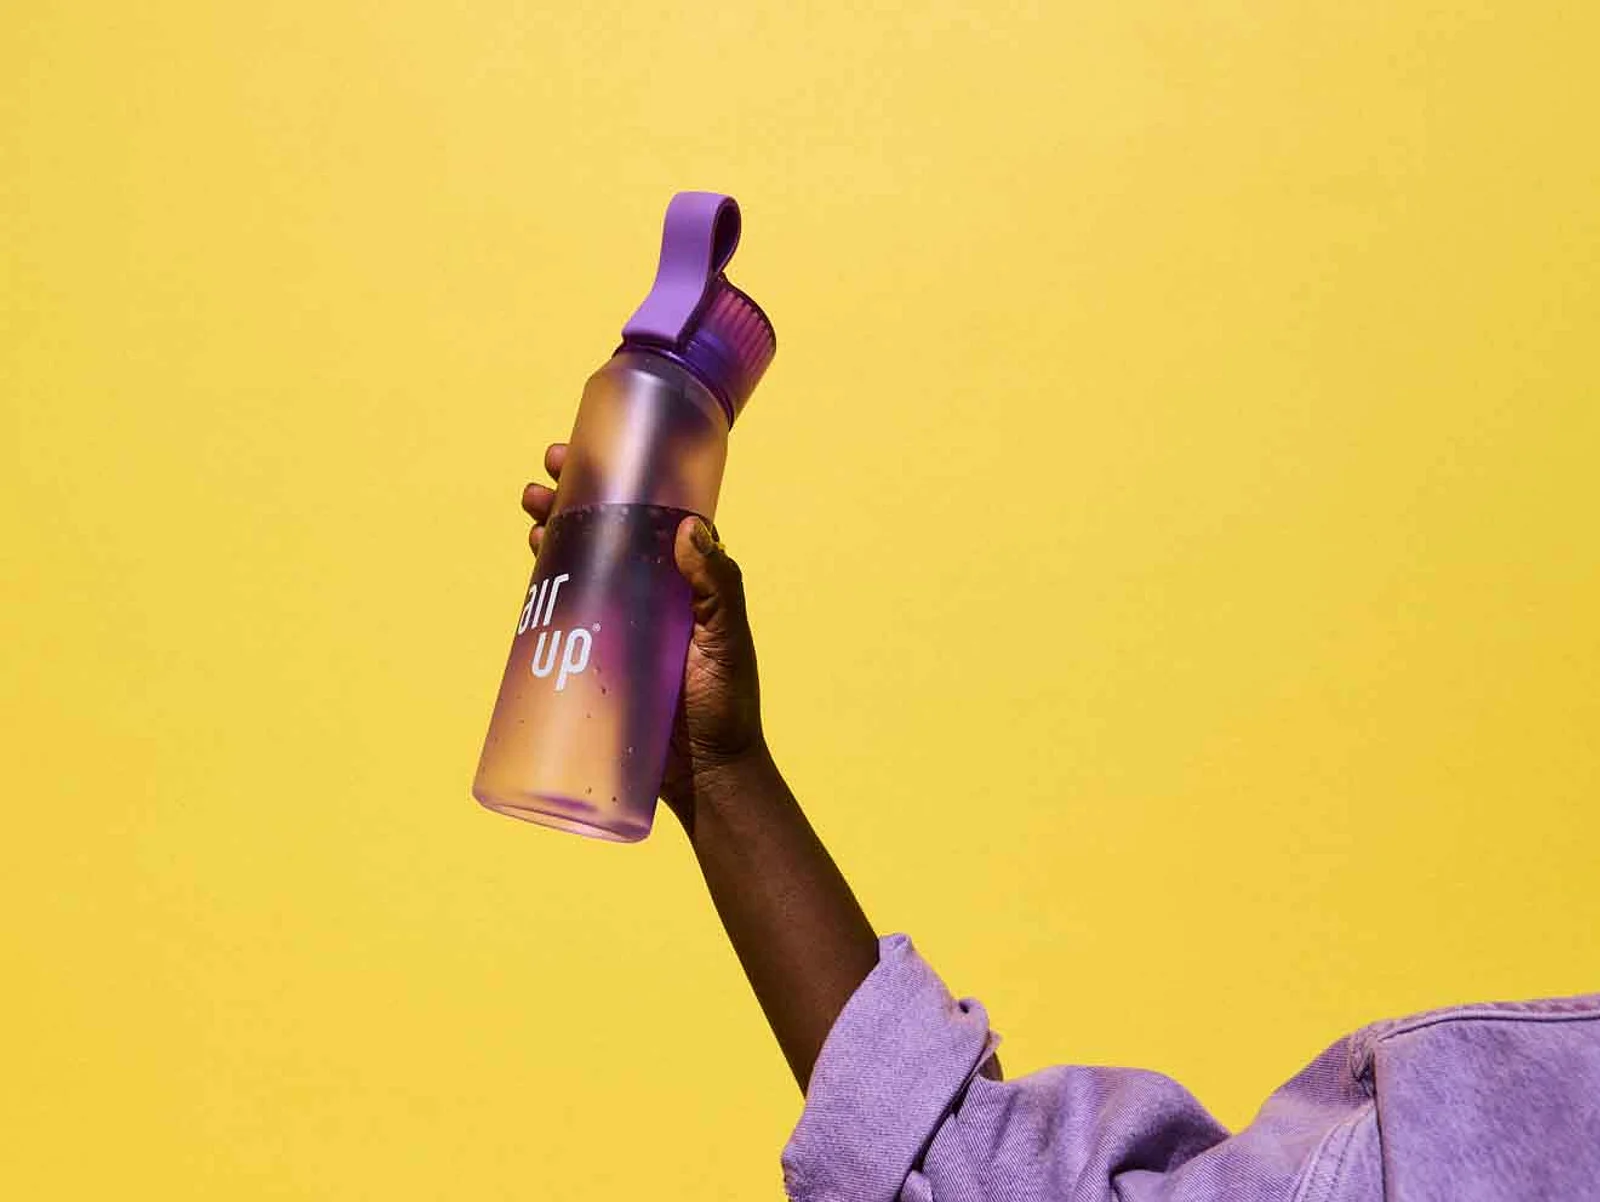 Air Up kaufen: Lohnt sich die Trend-Trinkflasche?